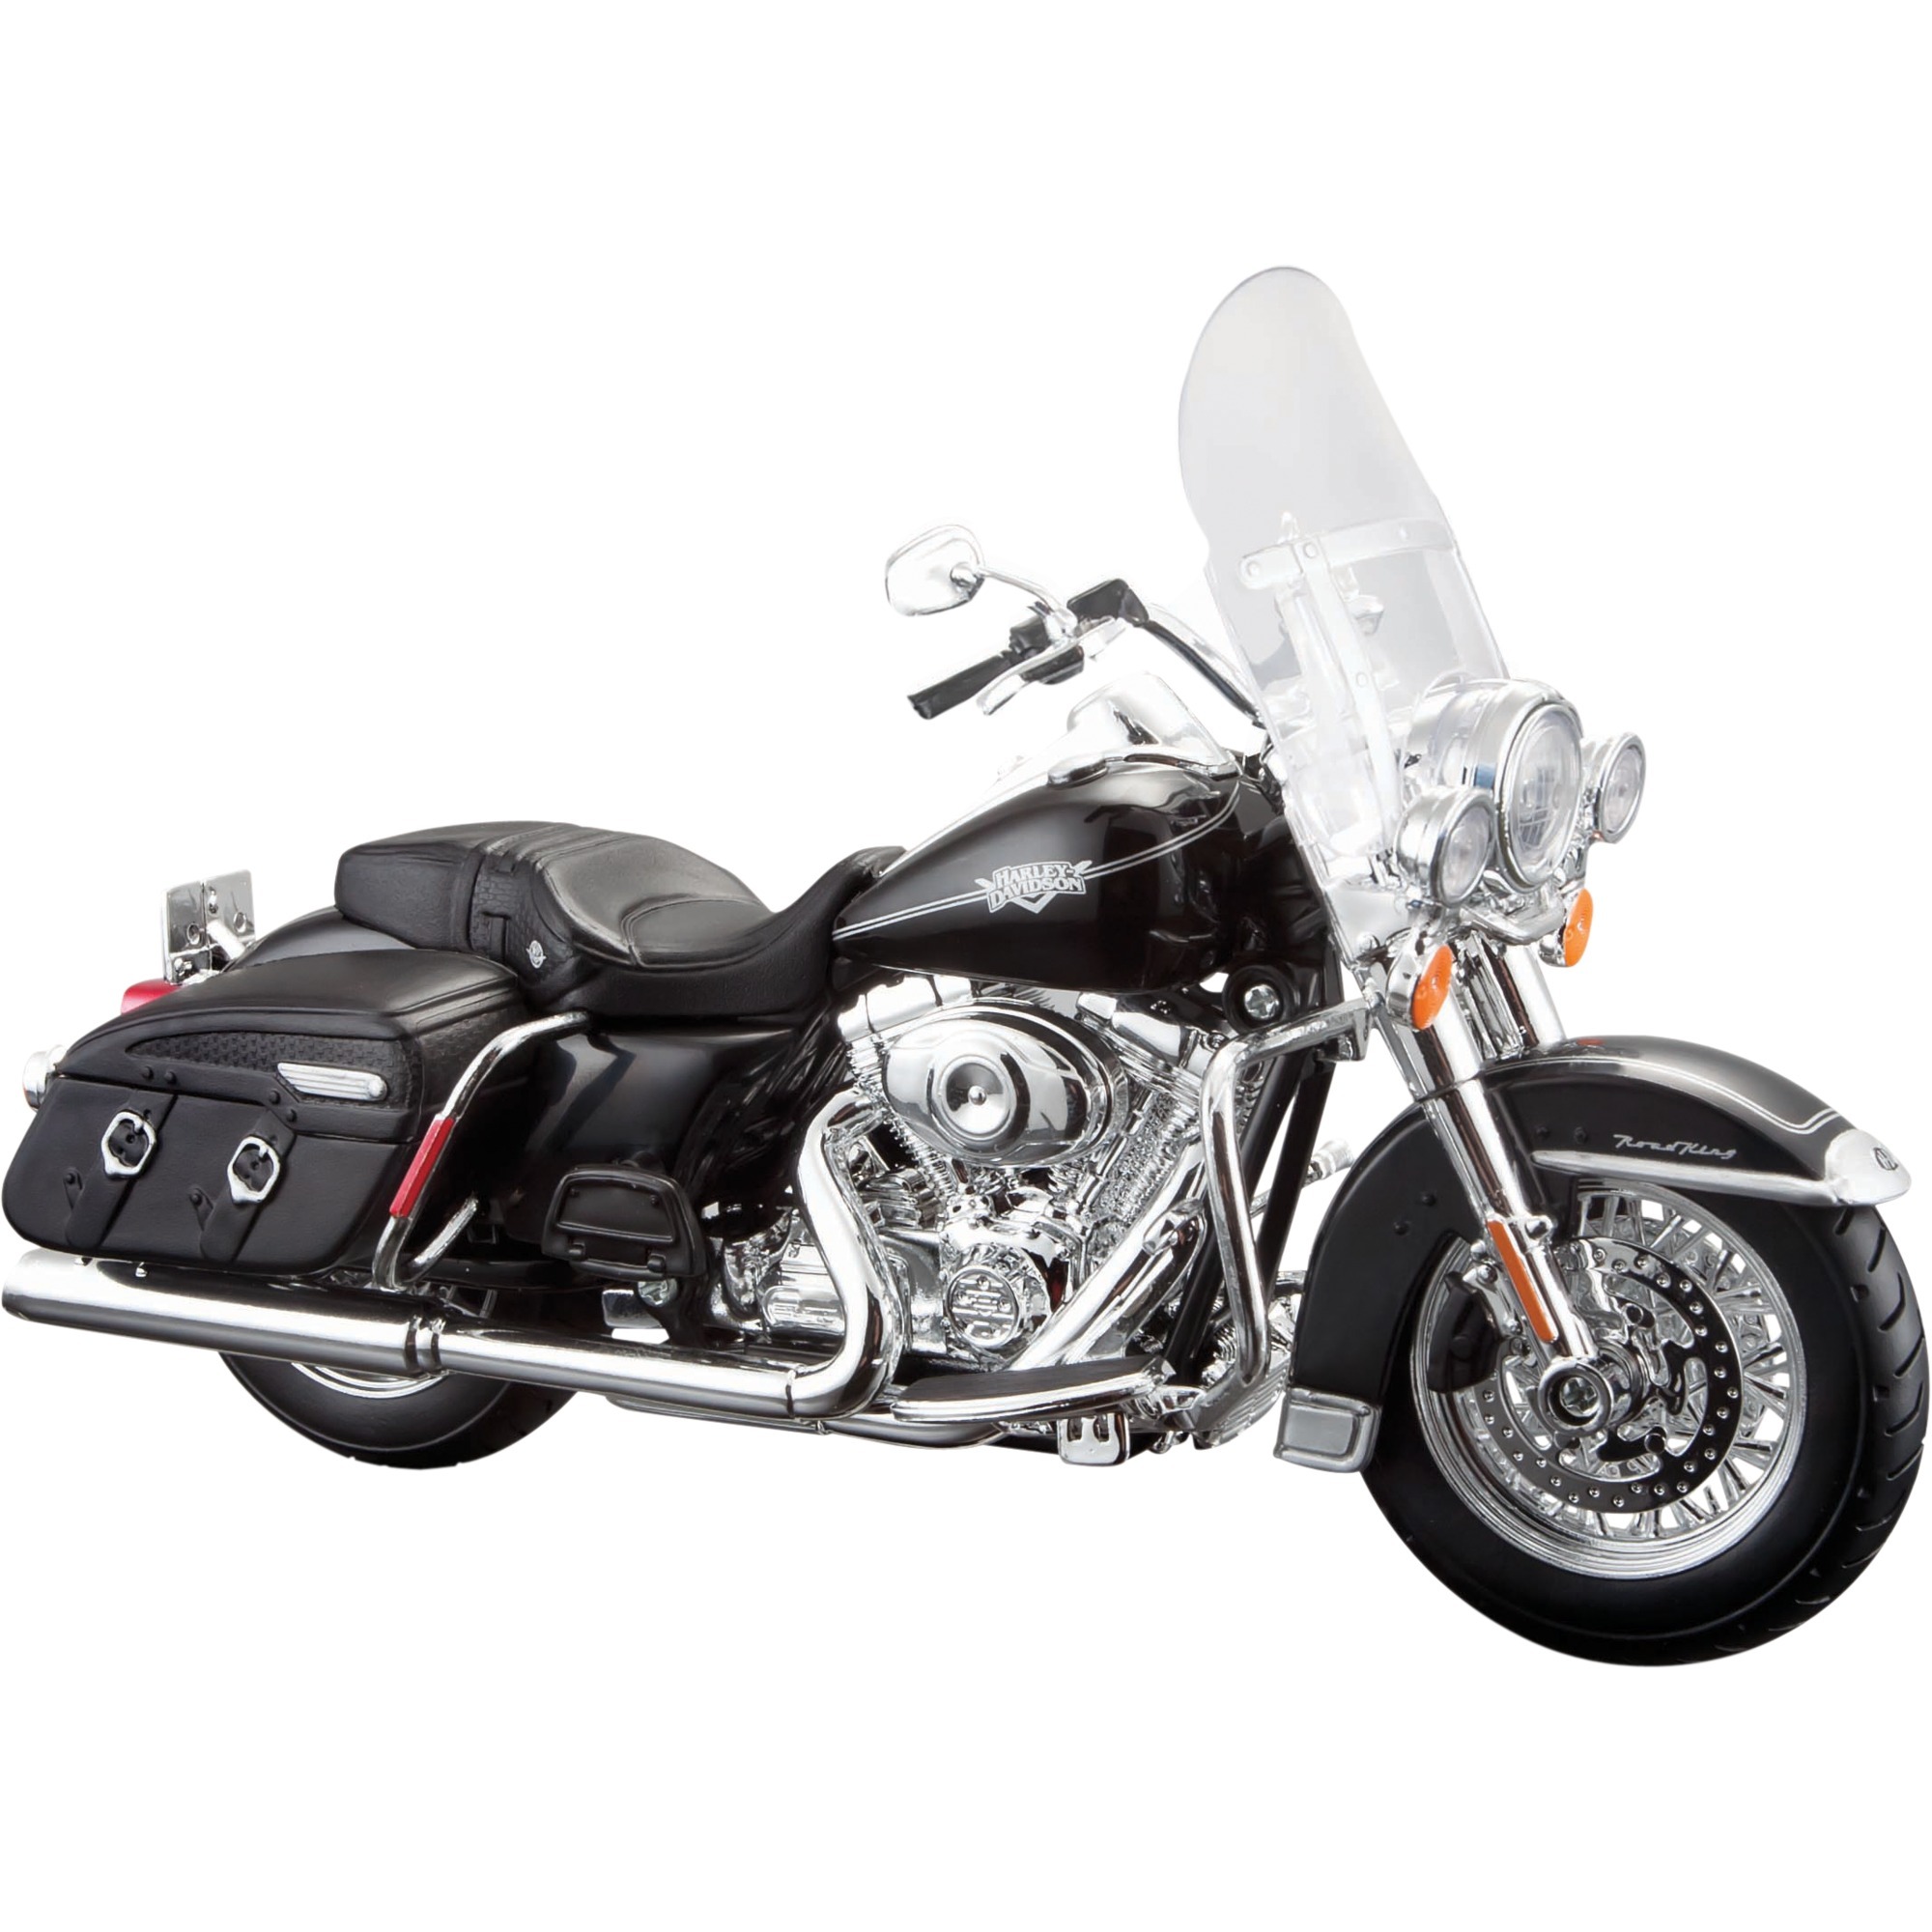 Image of Alternate - Harley-Davidson FLHRC Road King Classic 2013, Modellfahrzeug online einkaufen bei Alternate